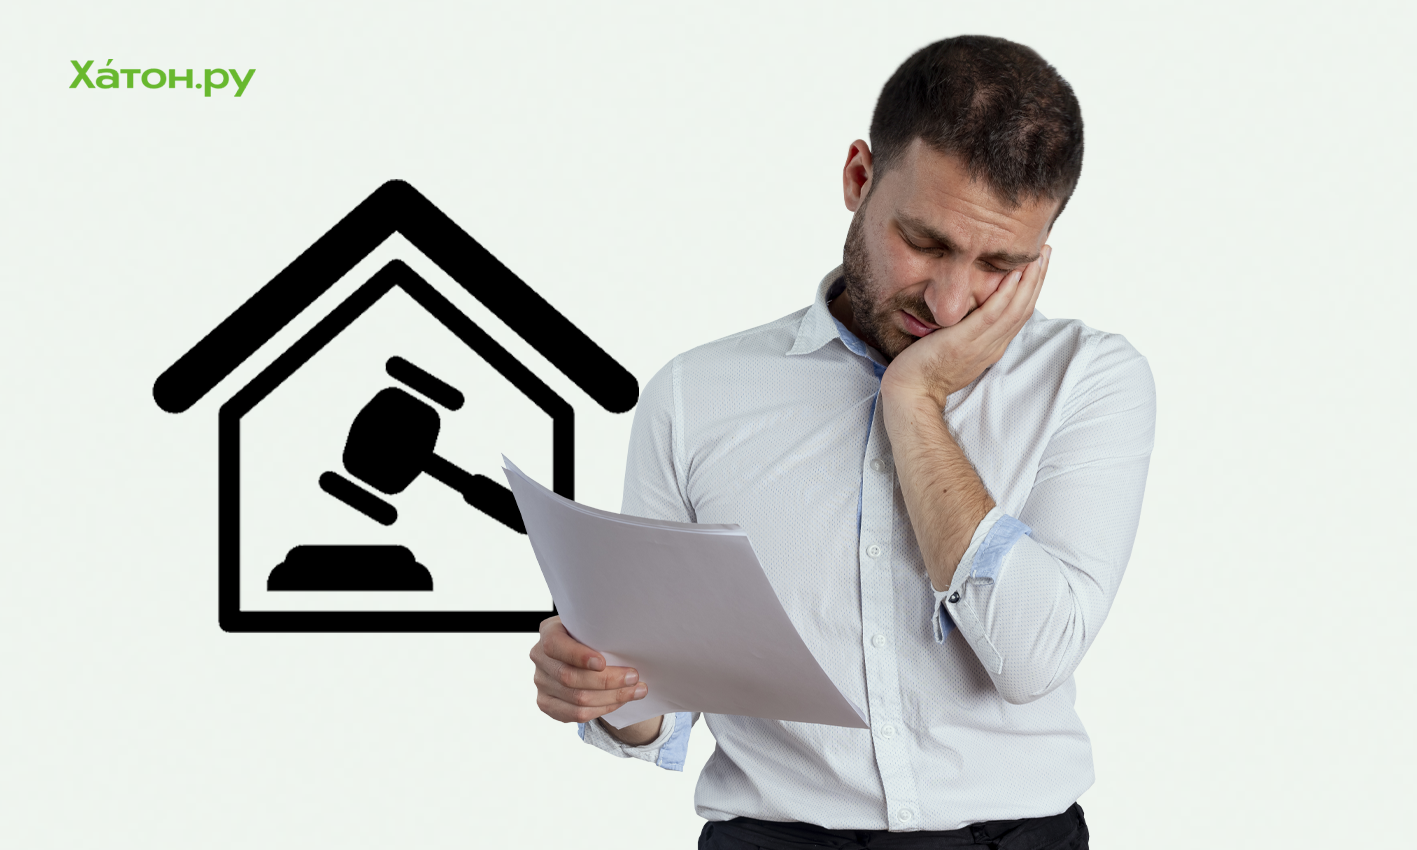 При оформлении кредита на первый взнос по ипотеке заемщики рискуют остаться без жилья